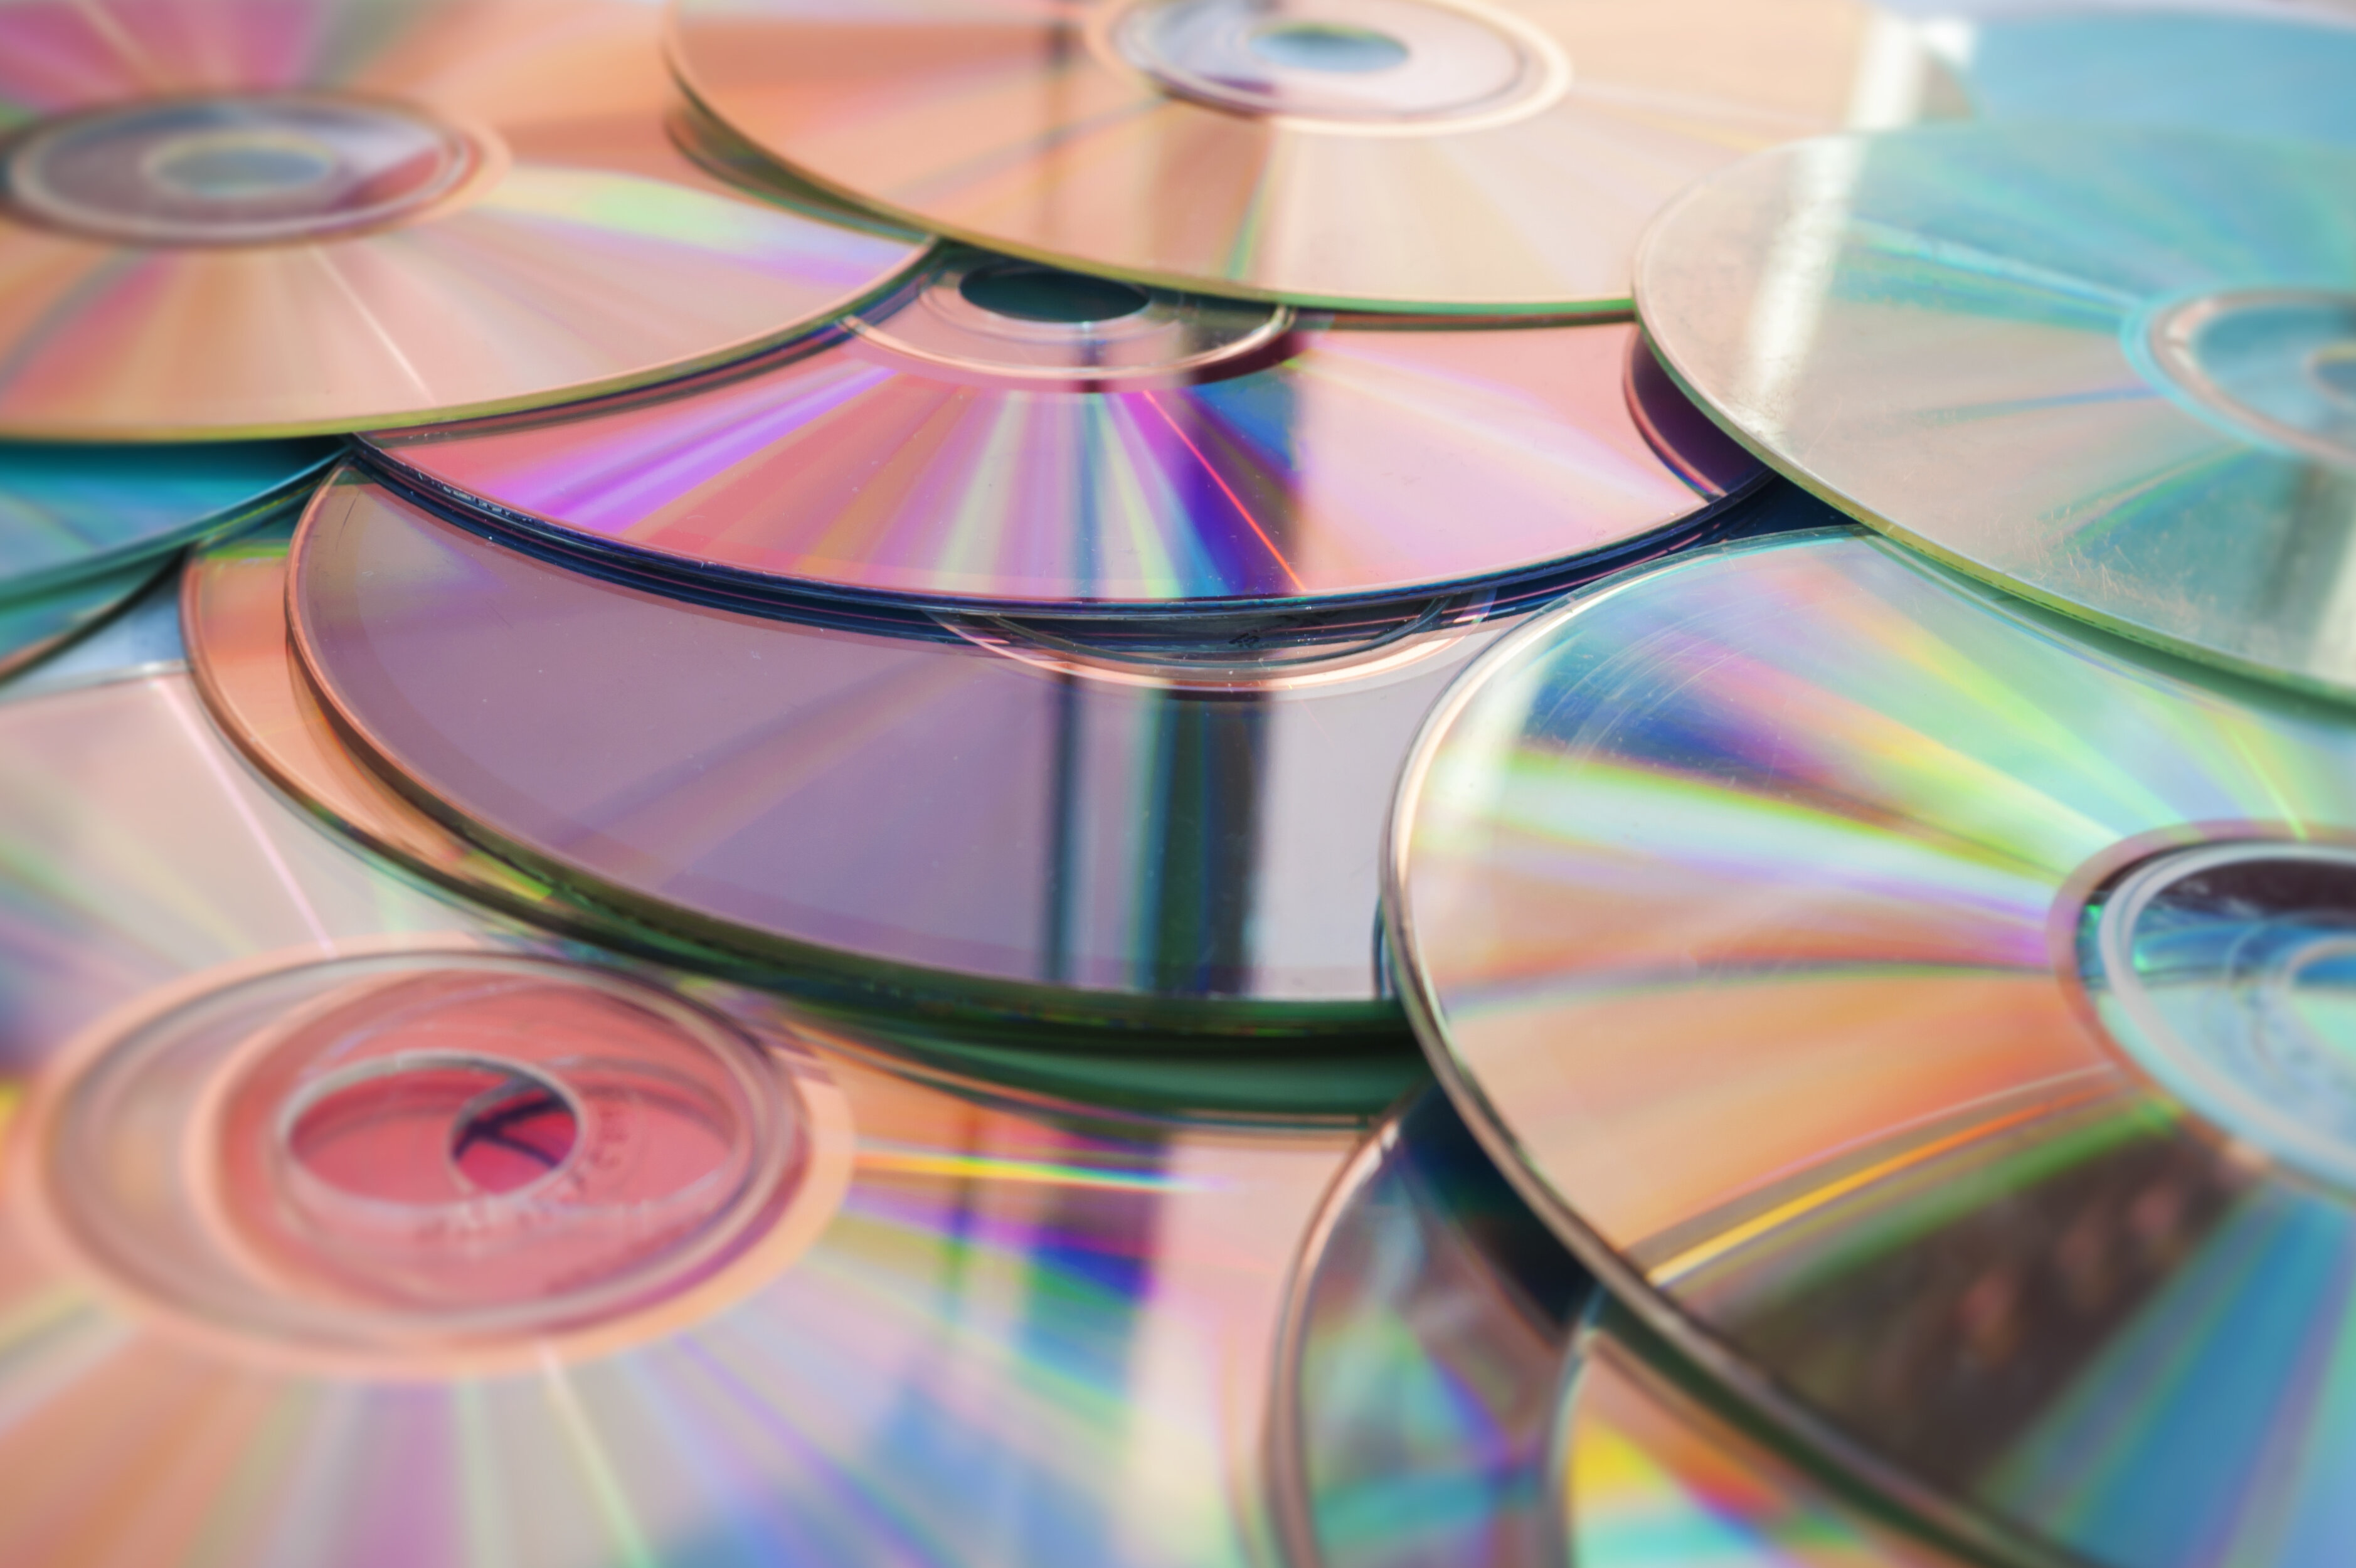 Anhäufung von CDs und DVDs